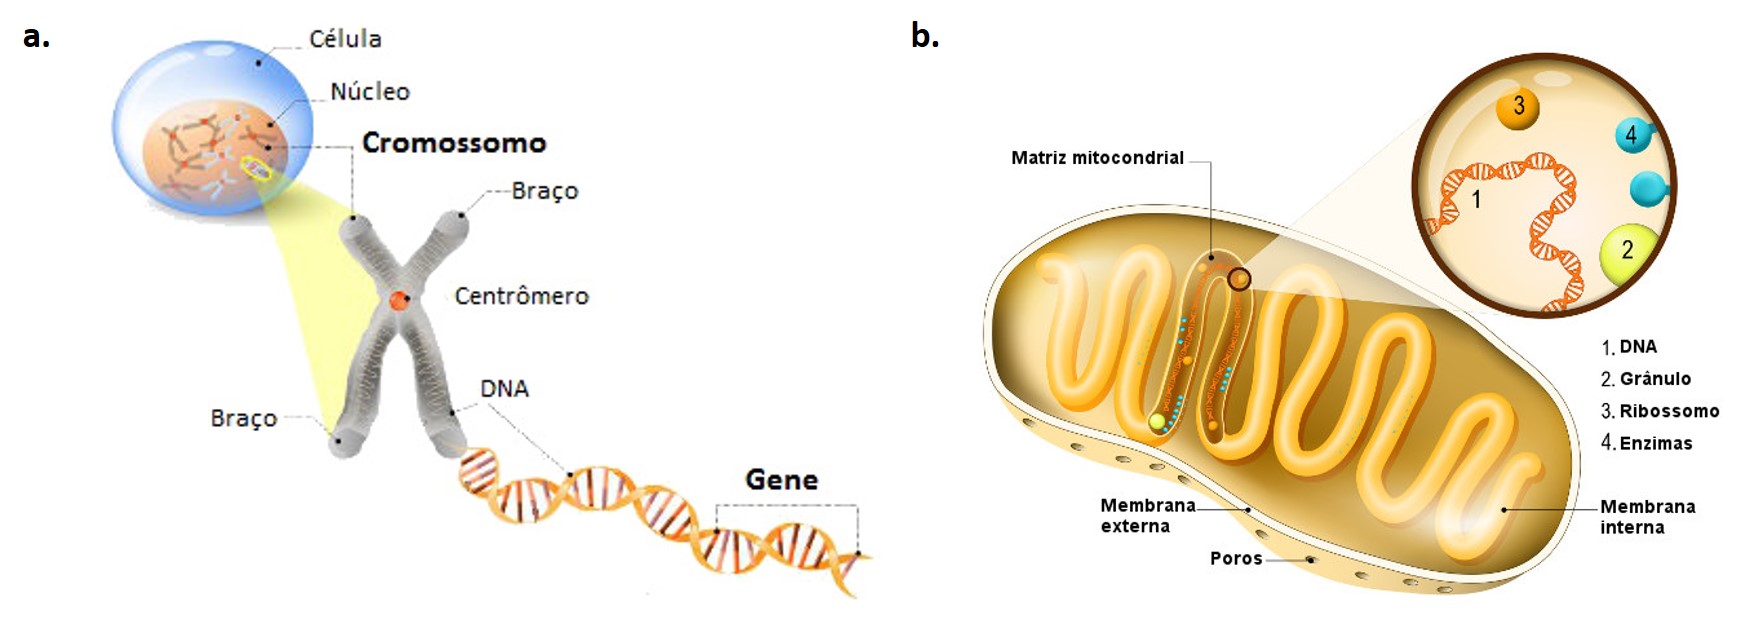 dna celular e mitocondrial